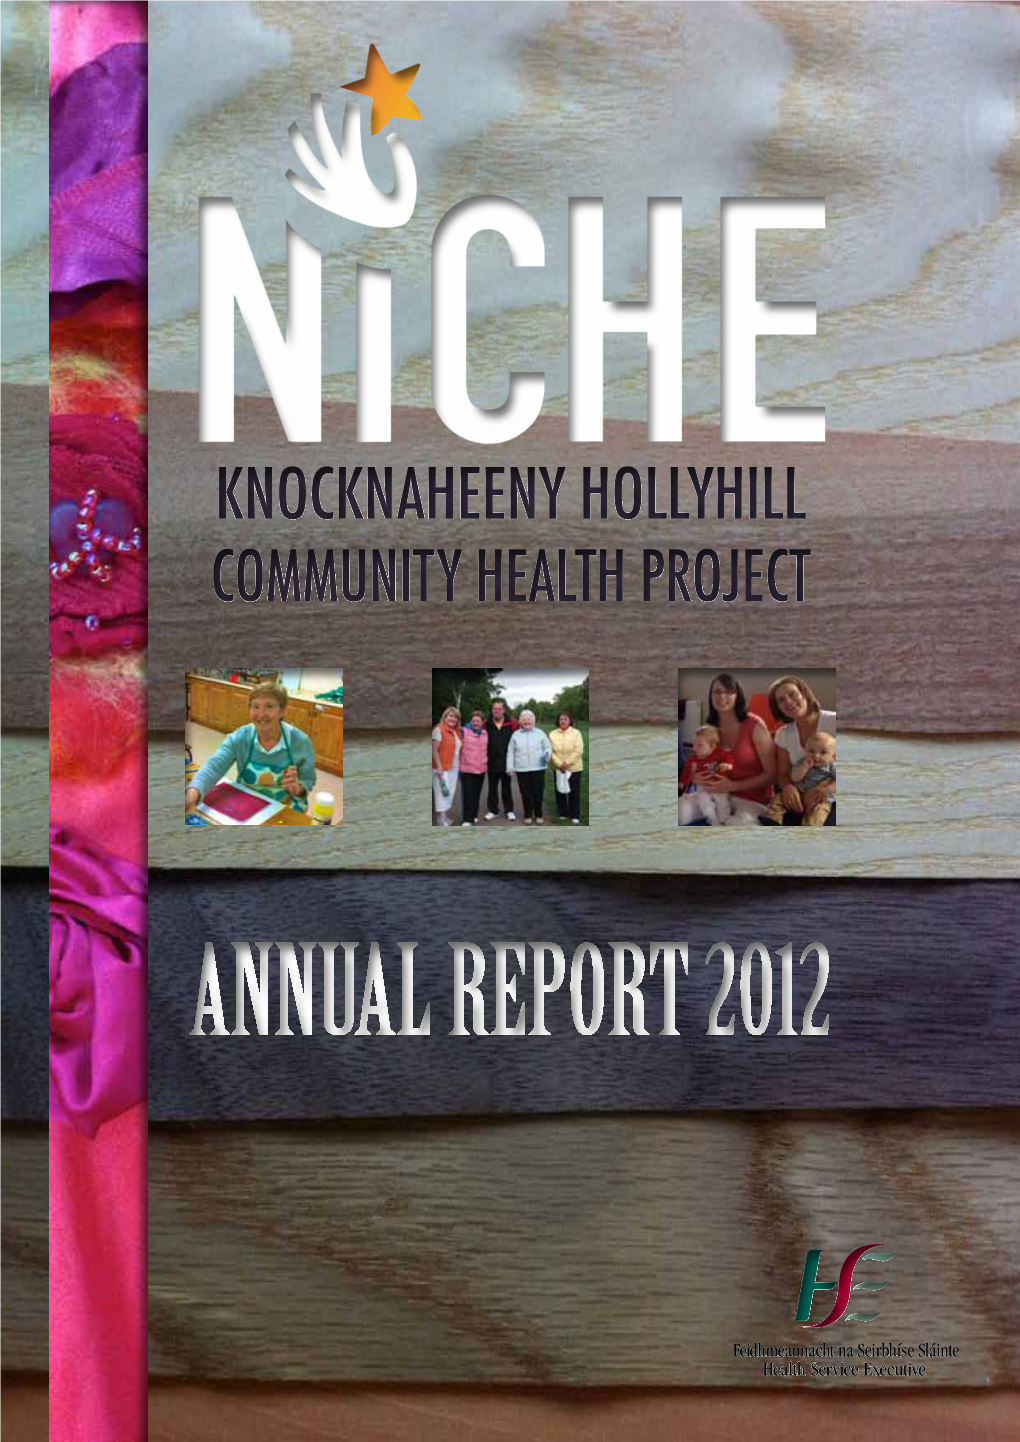 Knocknaheeny Hollyhill Community Health Project